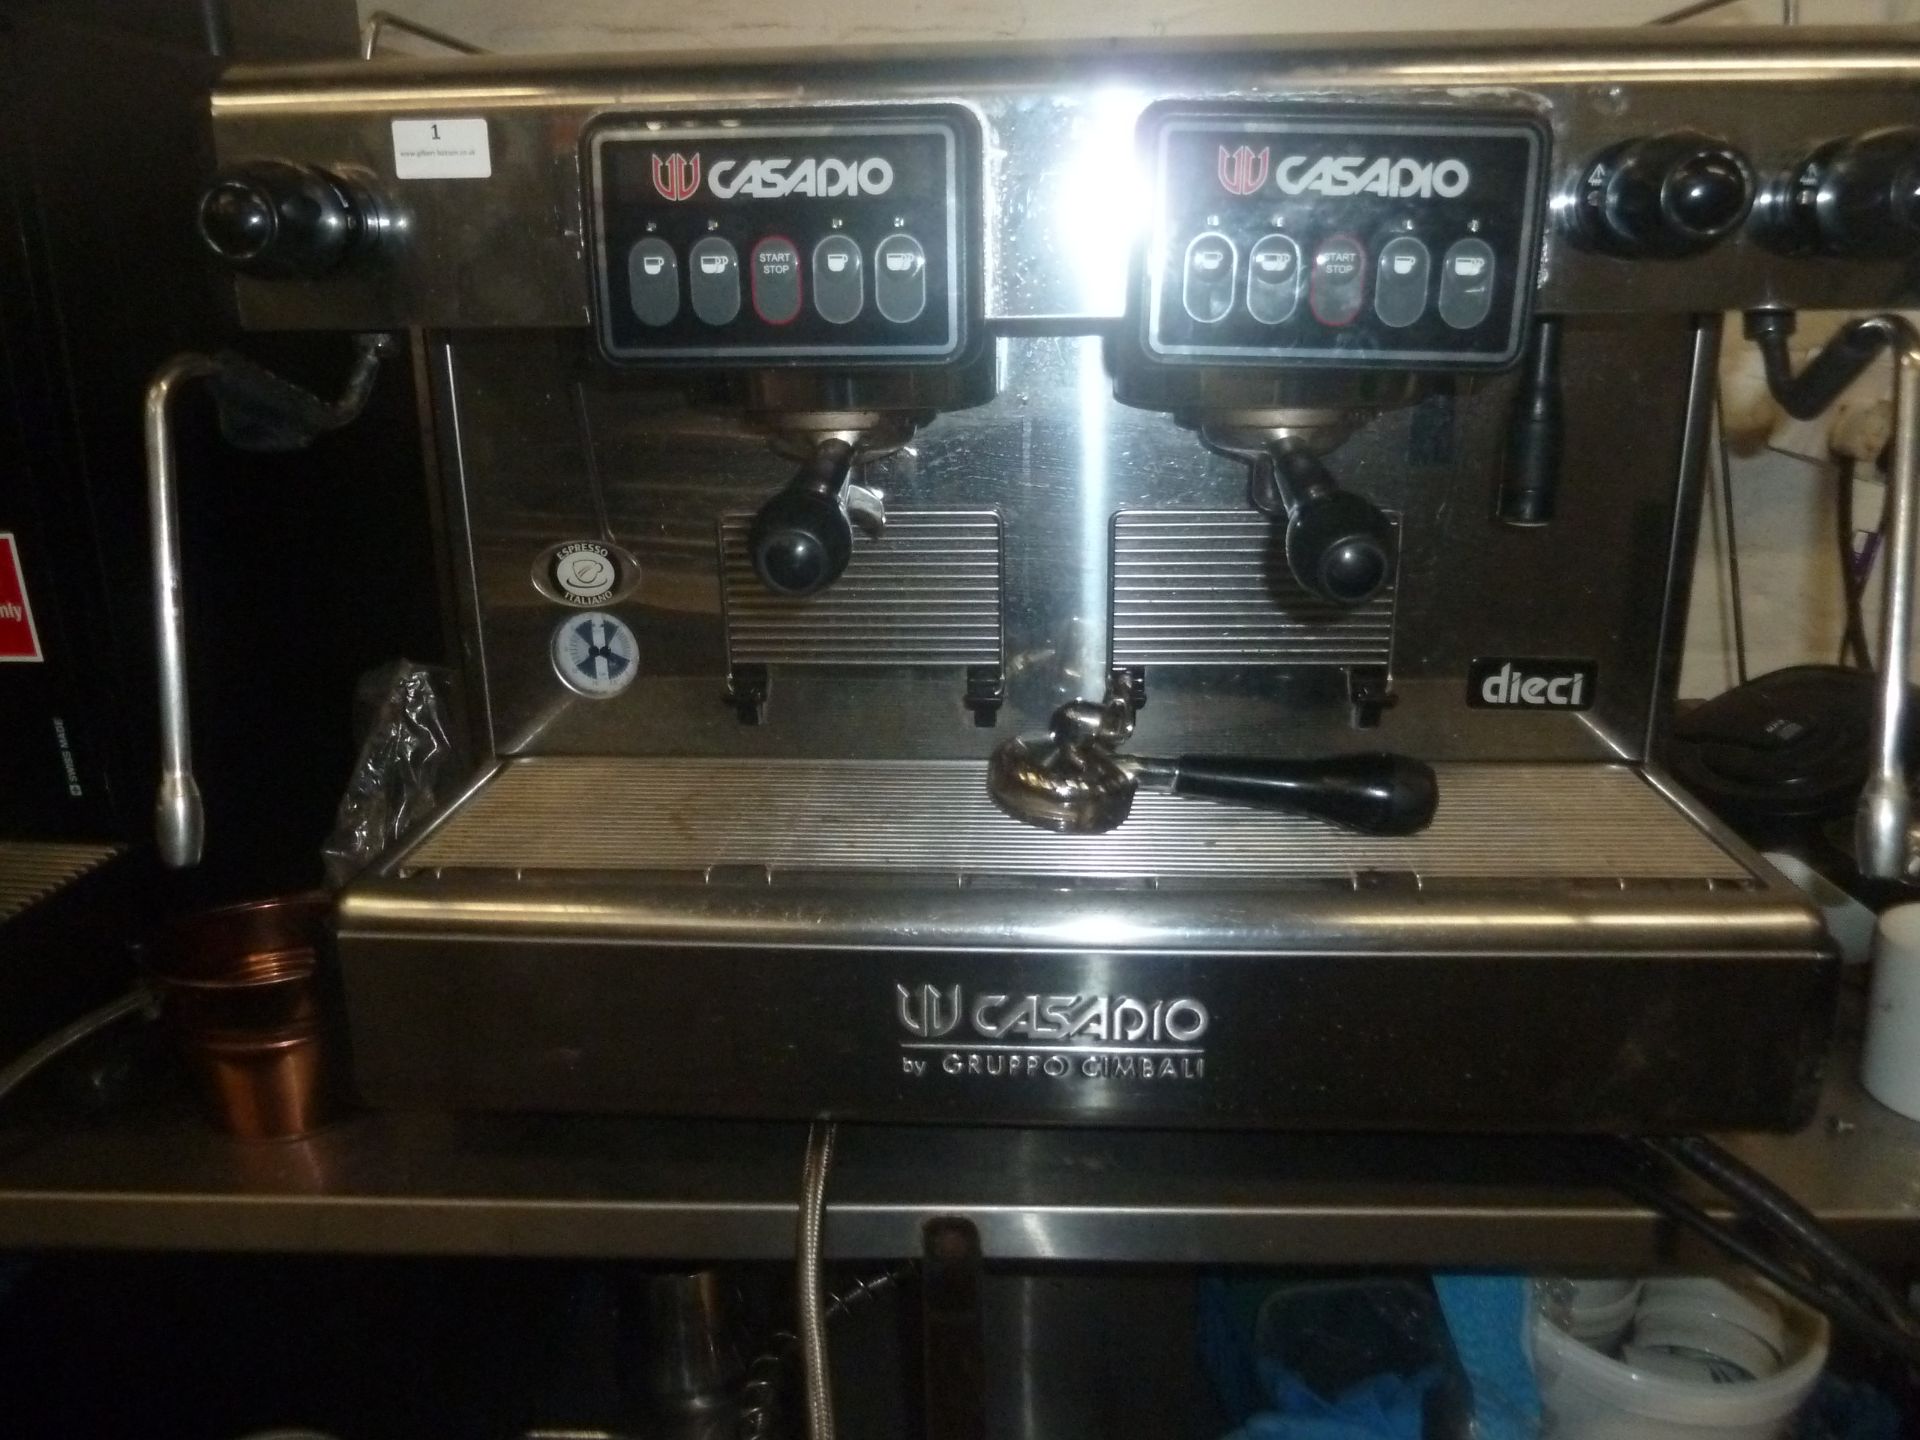 * Casadio by Gruppo Cimbali Dieci espresso italiano 2 group espresso coffee machine